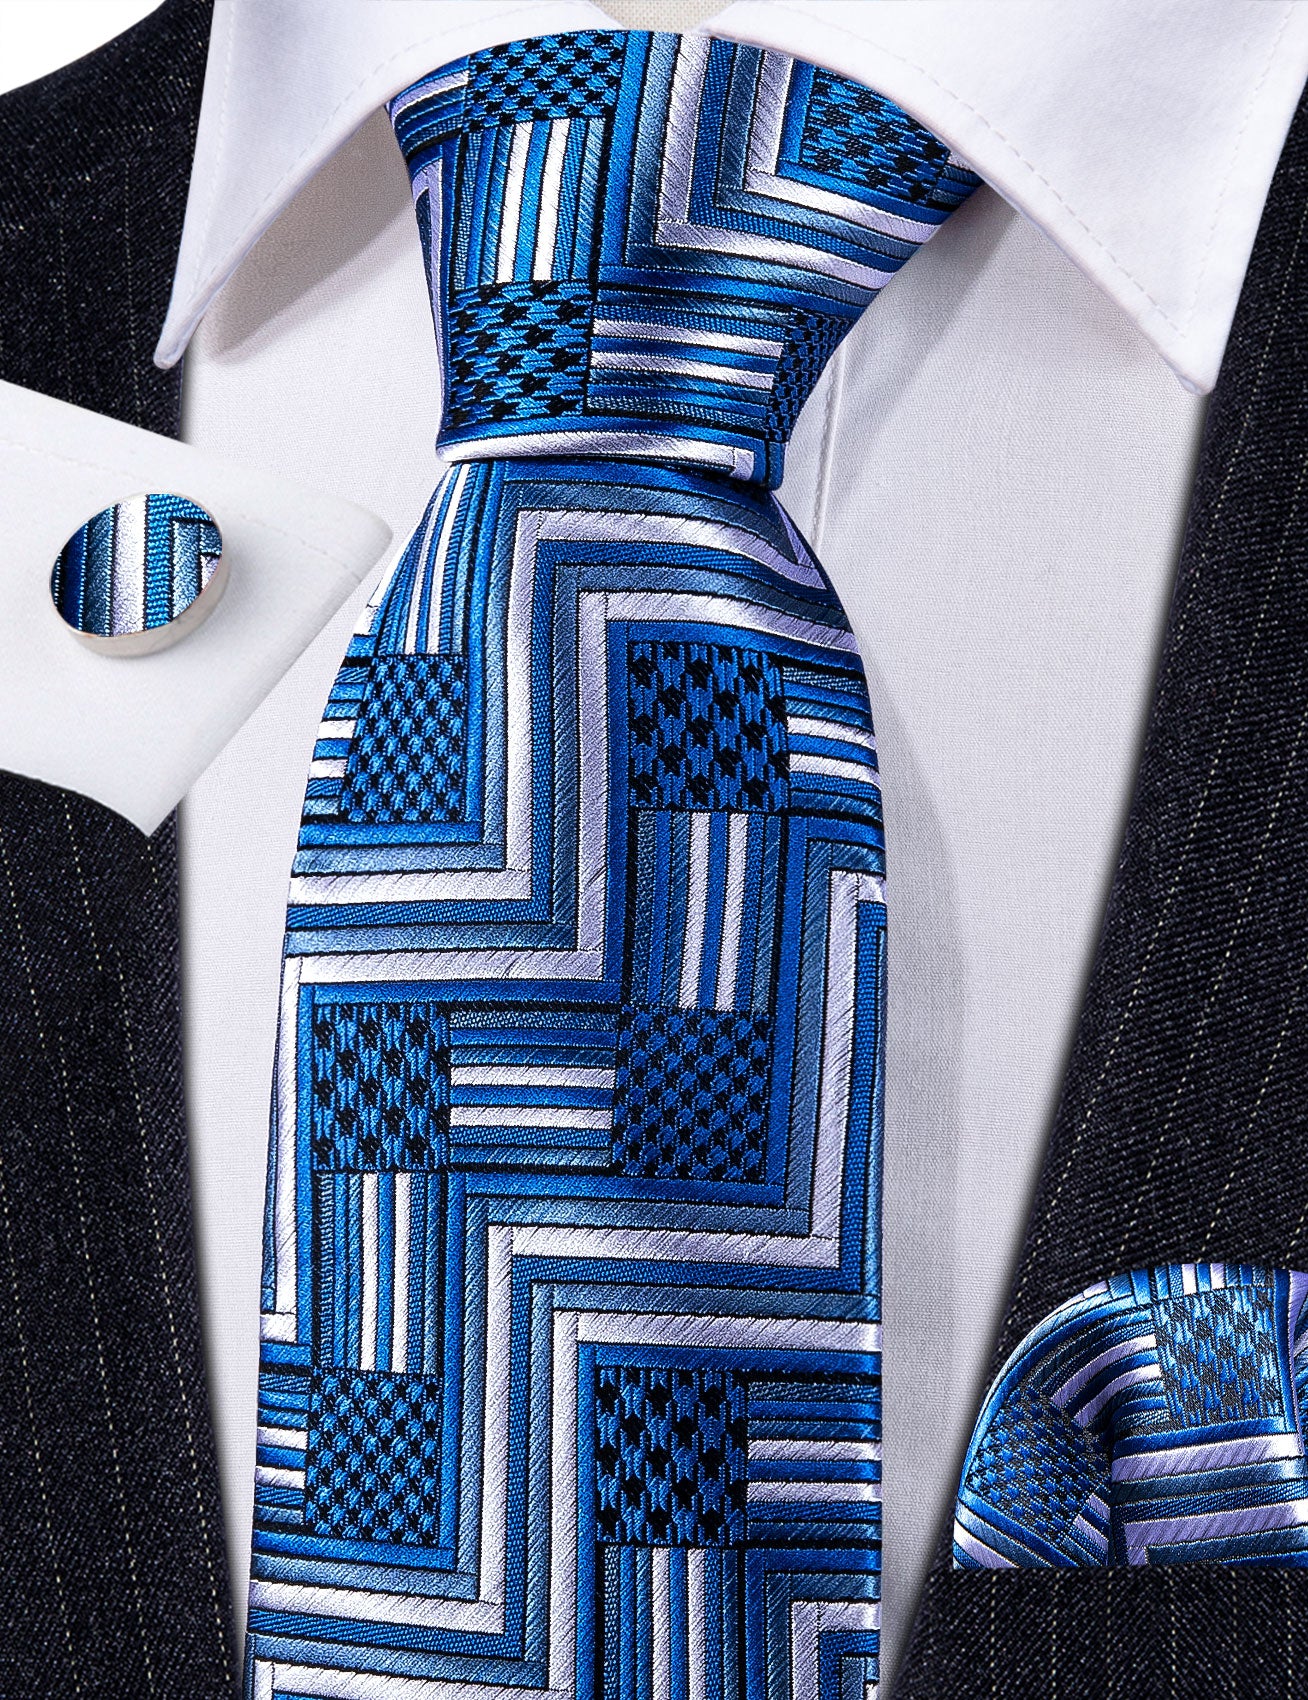 Blue White Plaid Silk Necktie Hanky Cufflinks Set